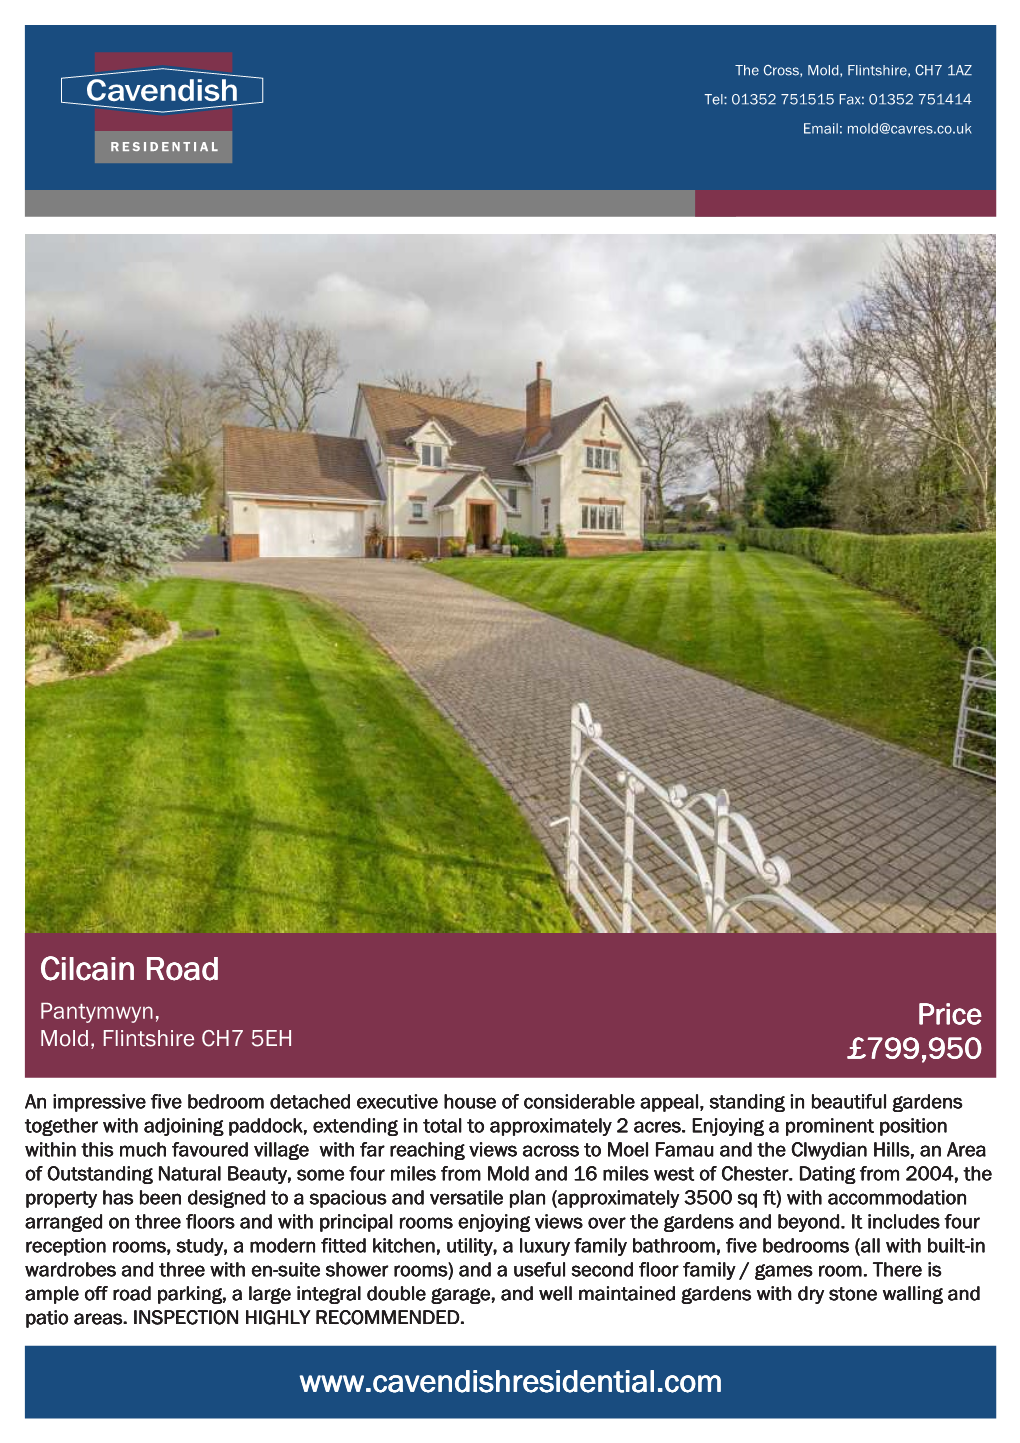 Cilcain Road Pantymwyn, Price Mold, Flintshire CH7 5EH £799,950